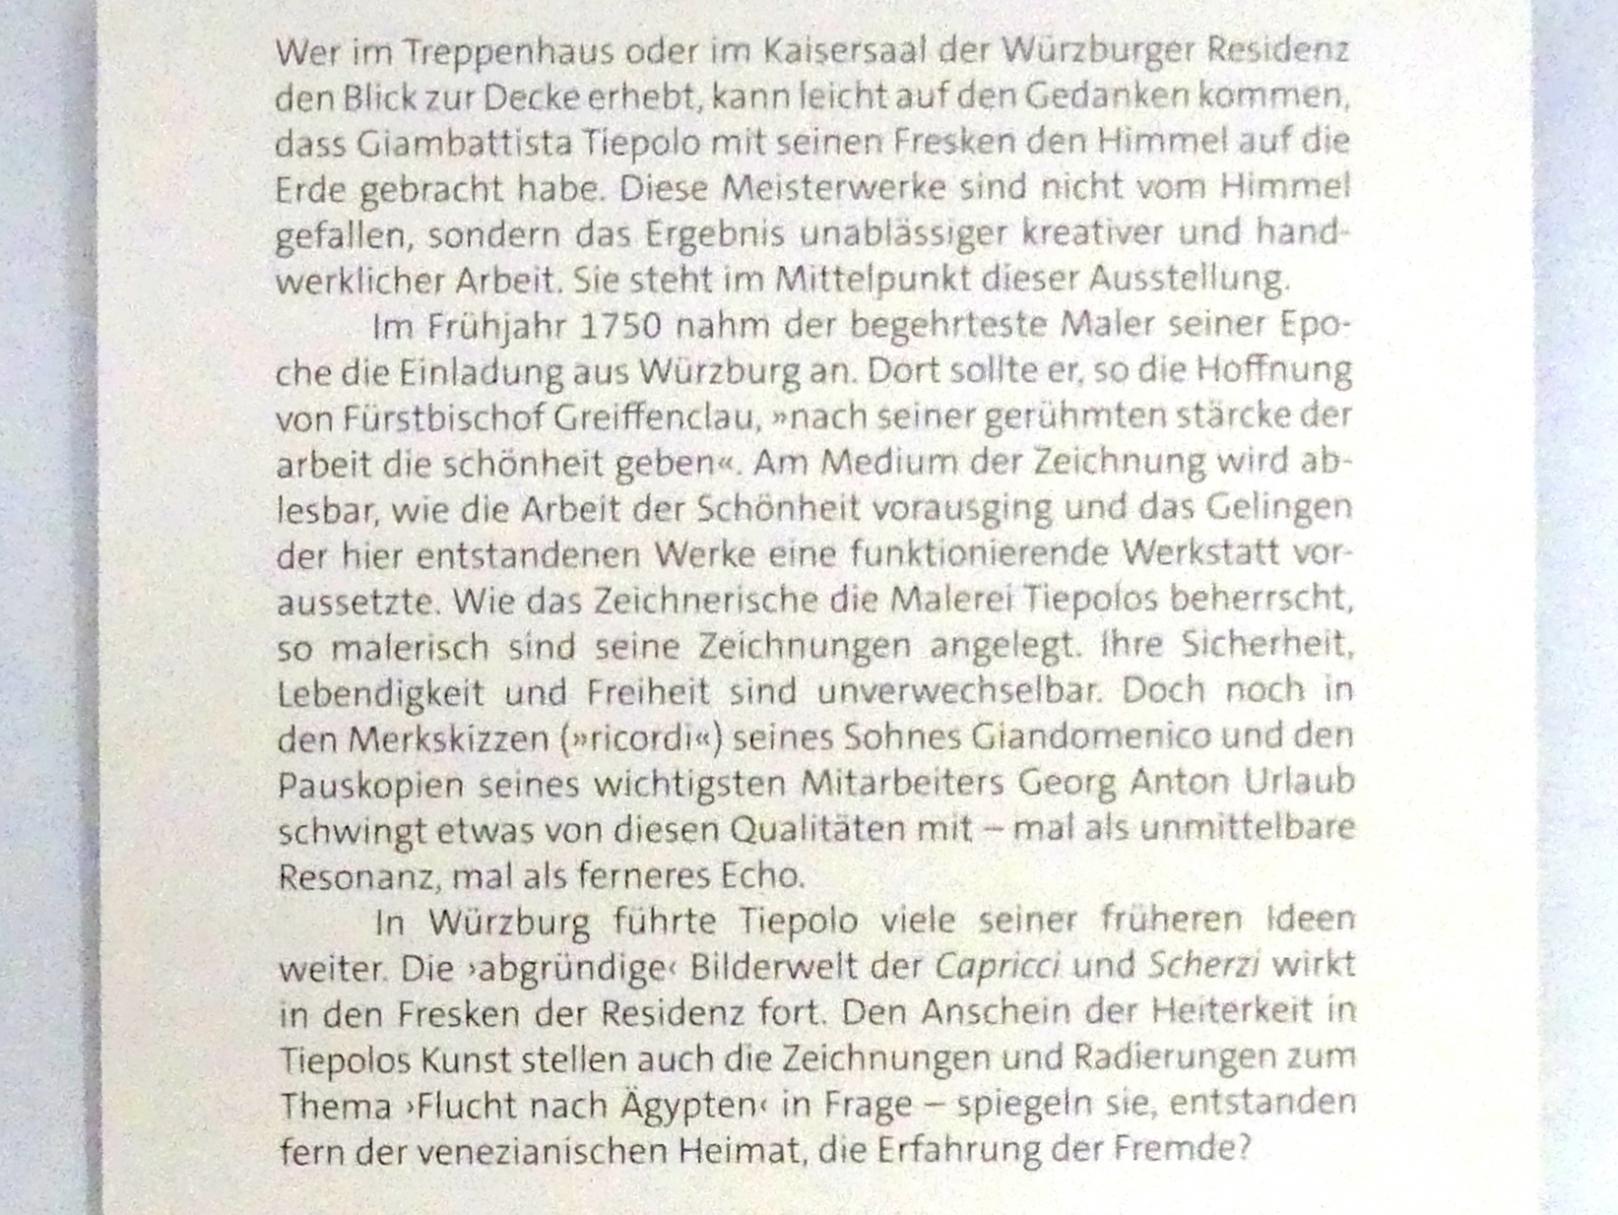 Würzburg, Martin von Wagner Museum, Ausstellung "Tiepolo und seine Zeit in Würzburg" vom 31.10.2020-15.07.2021, Bild 2/12